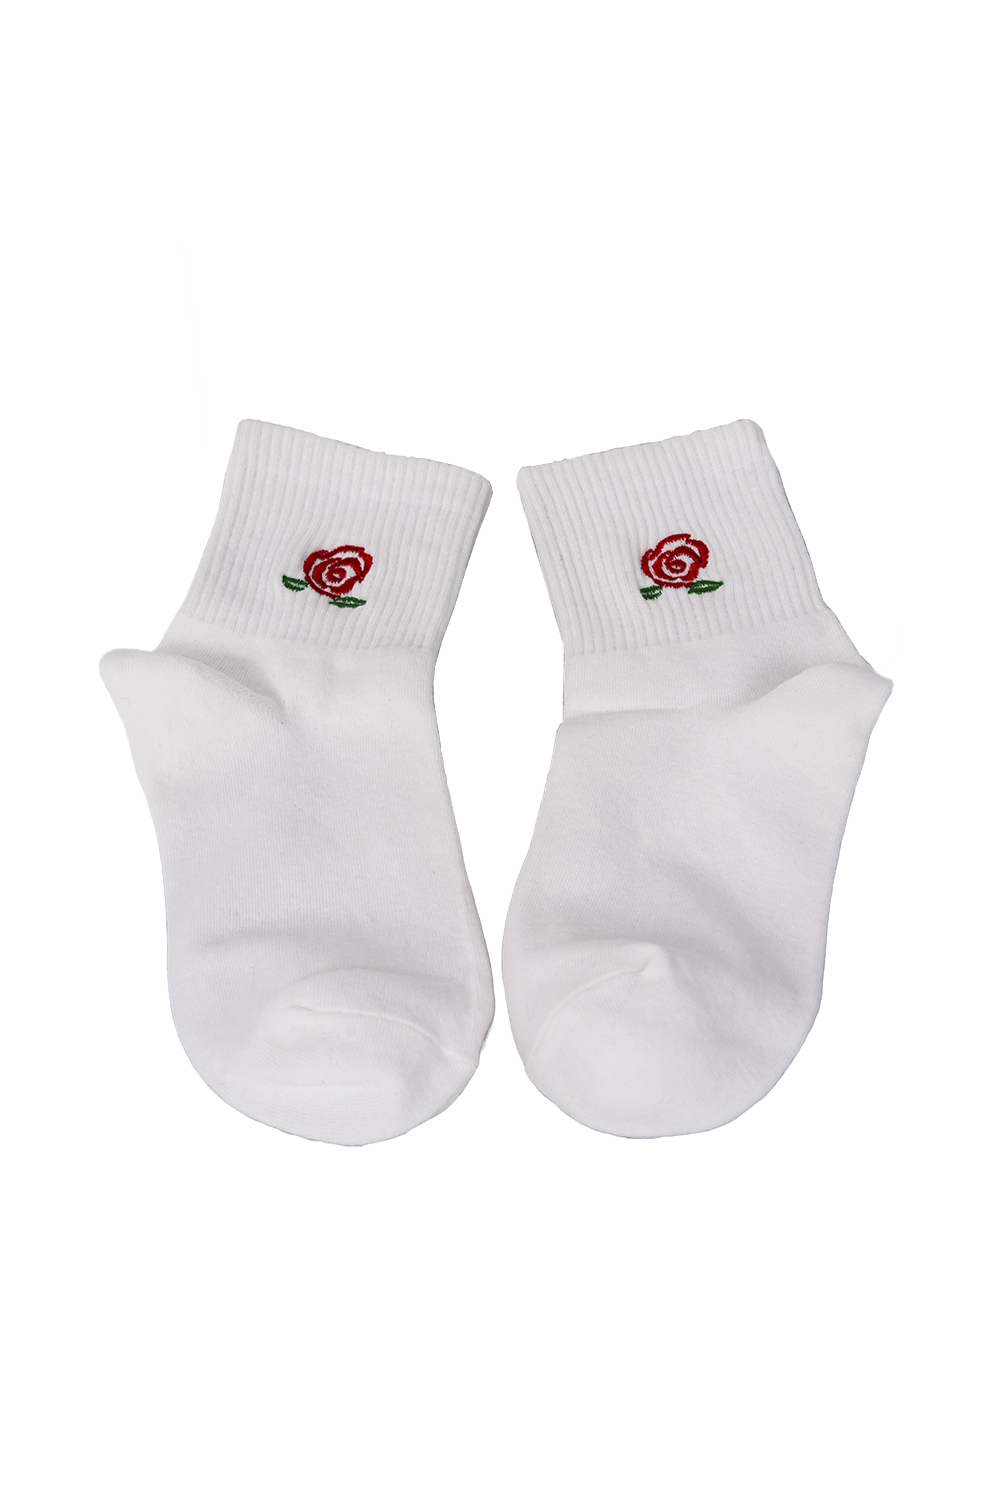 Κάλτσες με σχέδιο τριαντάφυλλο